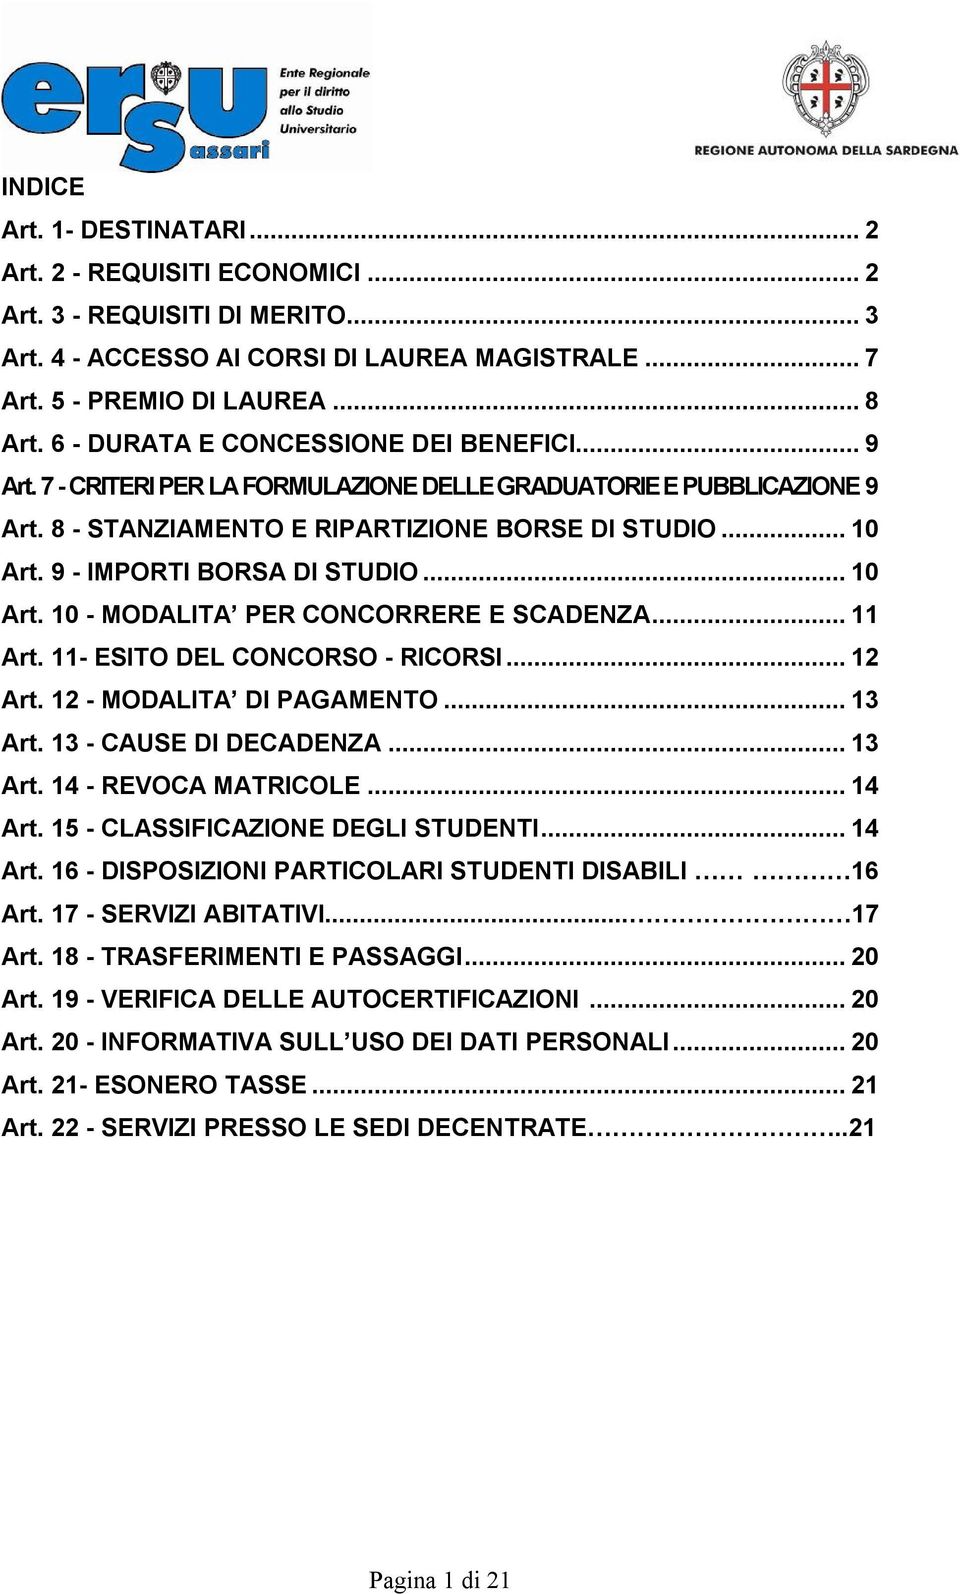 9 - IMPORTI BORSA DI STUDIO... 10 Art. 10 - MODALITA PER CONCORRERE E SCADENZA... 11 Art. 11- ESITO DEL CONCORSO - RICORSI... 12 Art. 12 - MODALITA DI PAGAMENTO... 13 Art. 13 - CAUSE DI DECADENZA.